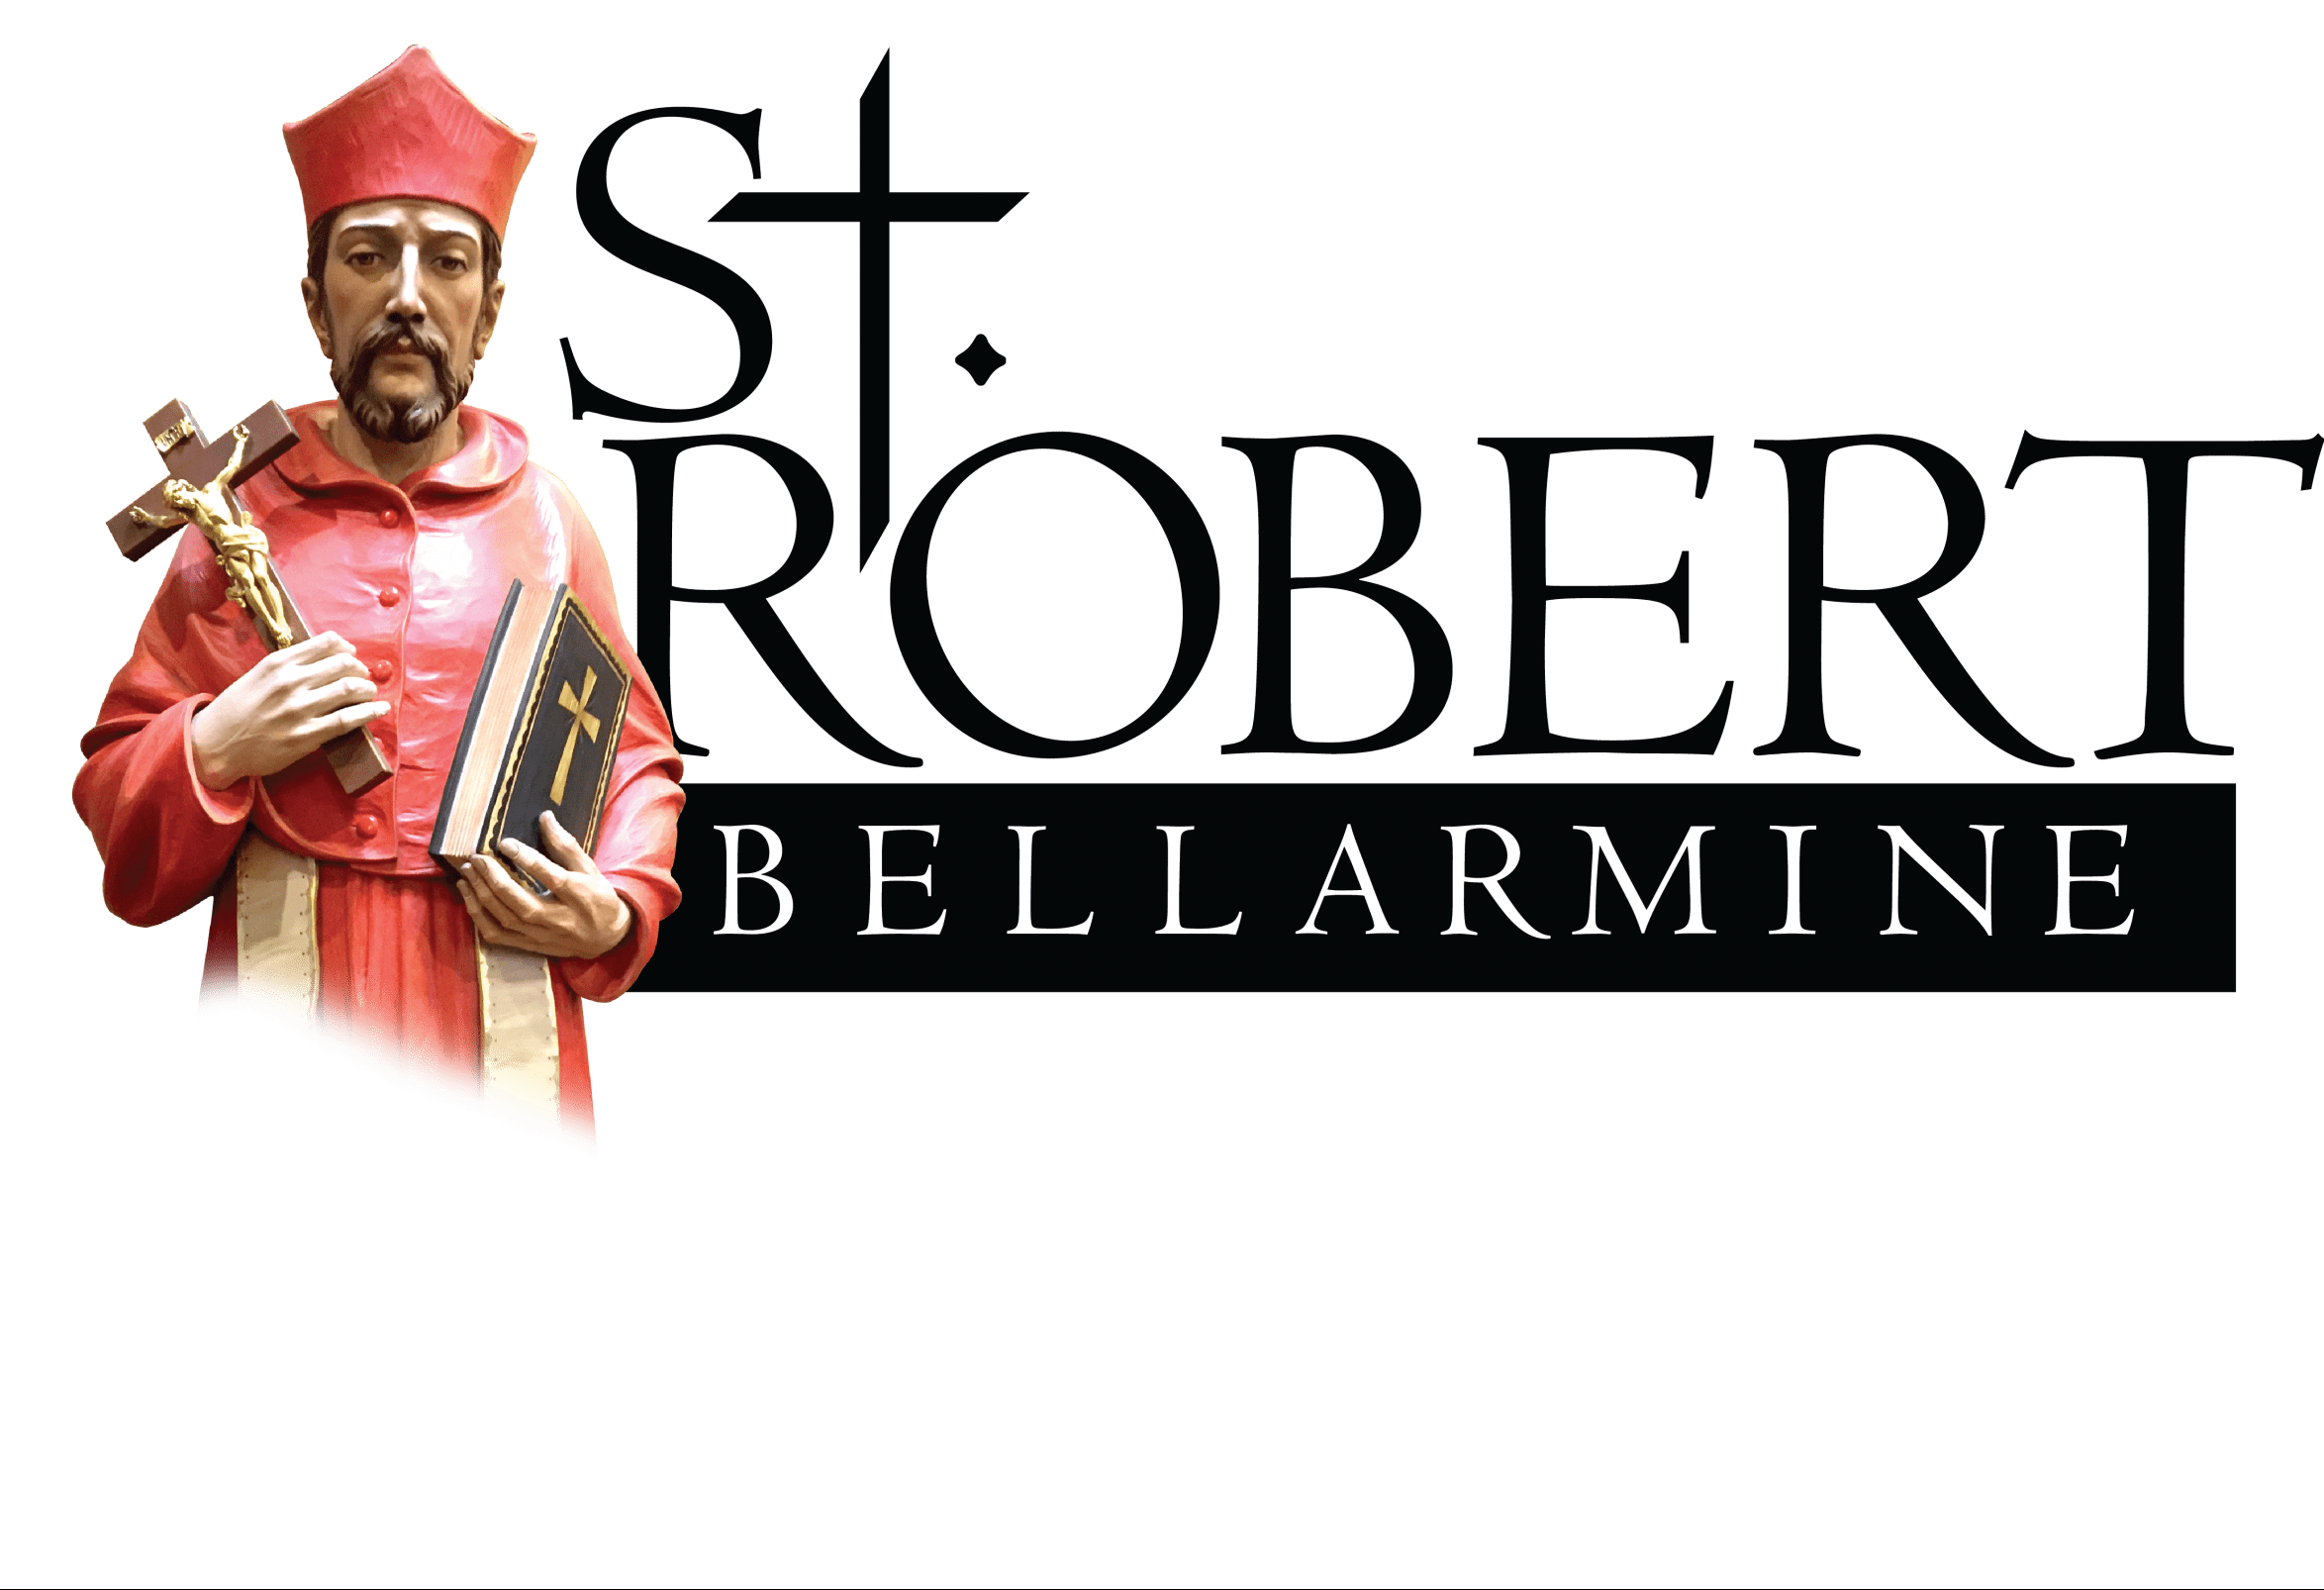 St. Robert